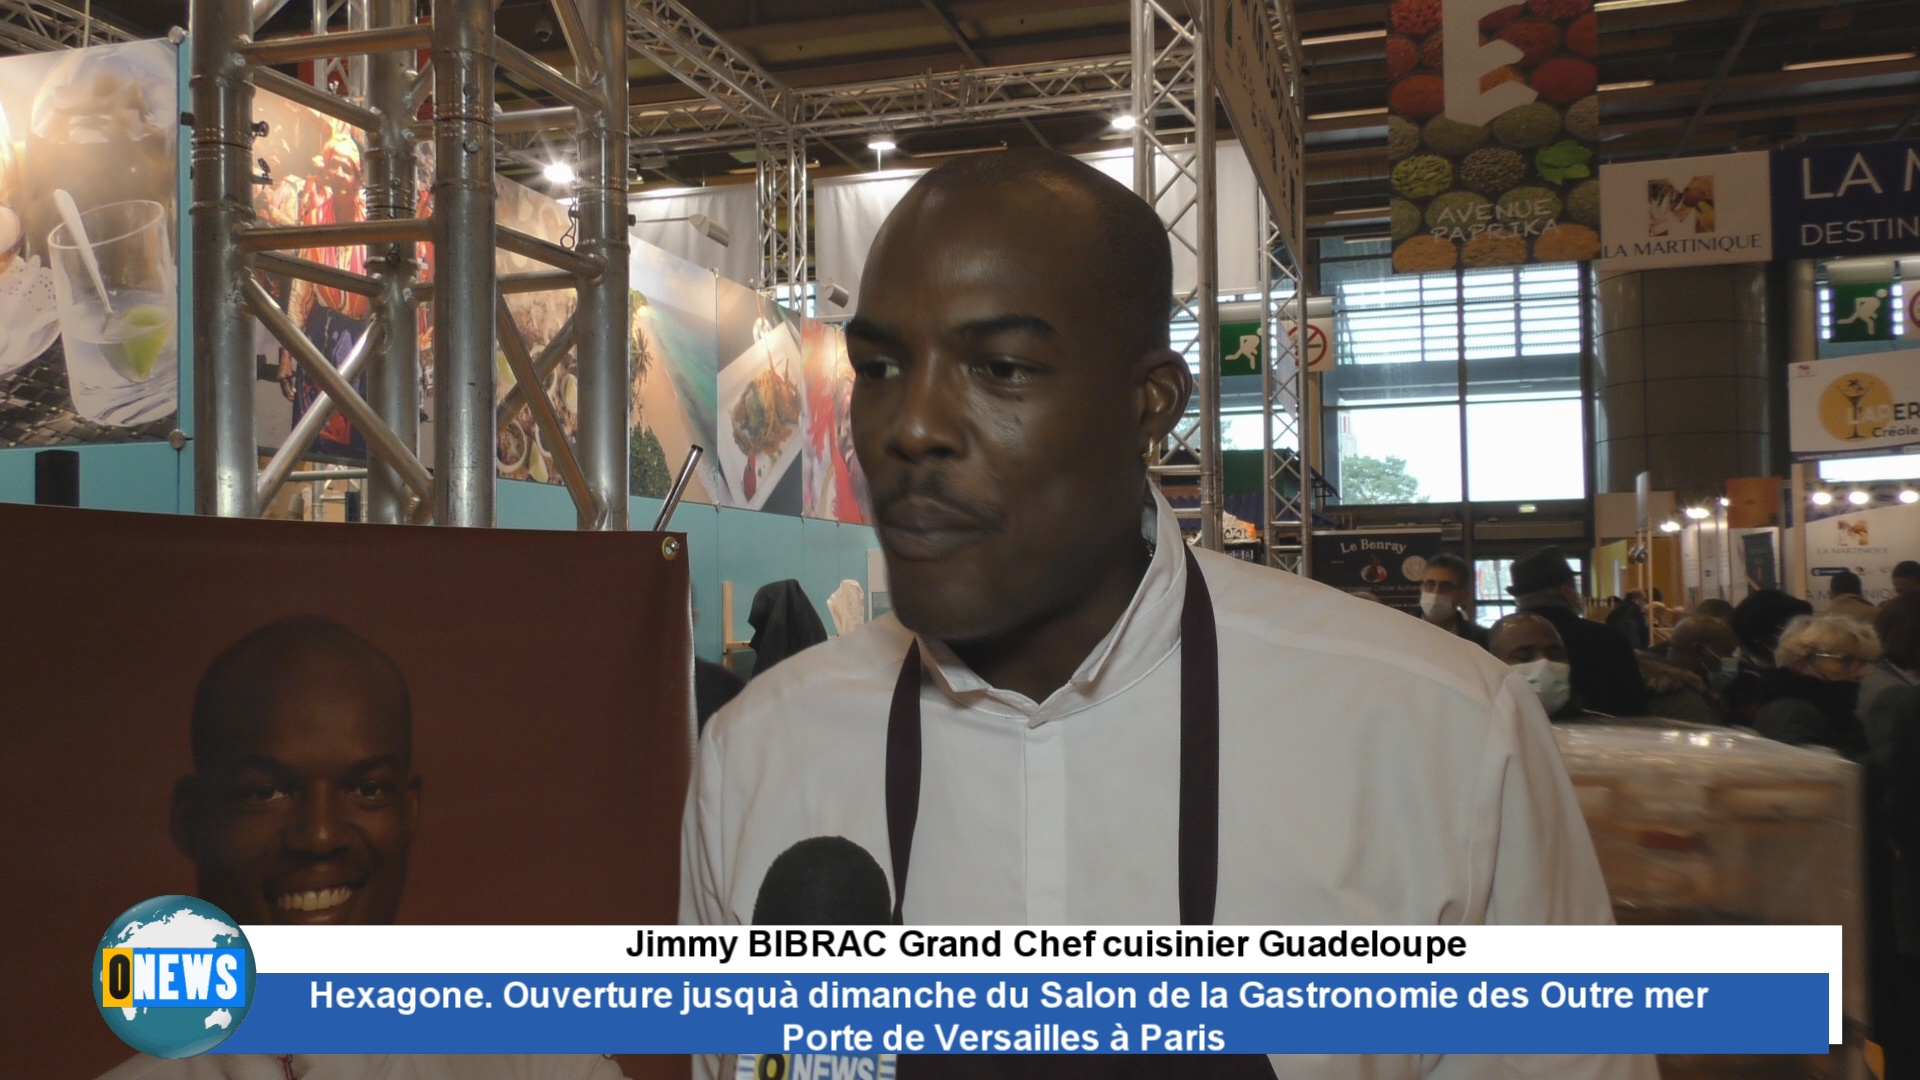 [Vidéo] Hexagone. La Chambre des métiers de Guadeloupe au Salon de la Gastronomie et le chef cuisinier Jimmy BIBRAC